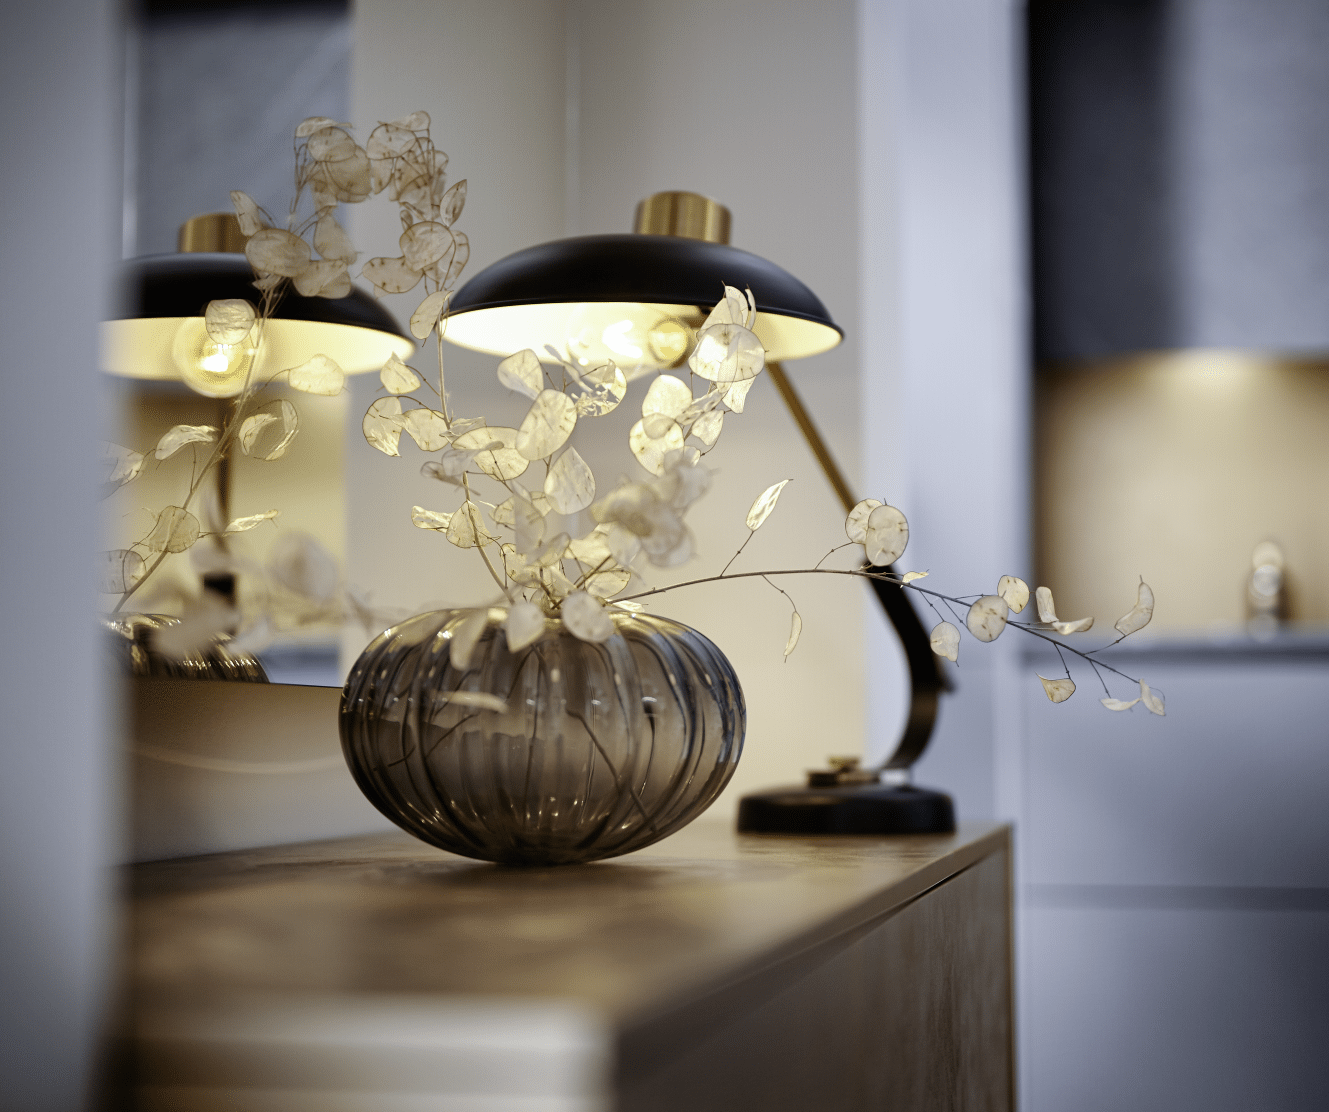 WOHNHAUS Grill & Ronacher zeigt eine Kommode mit schöner Lampe und Vase von Häcker Küchen.